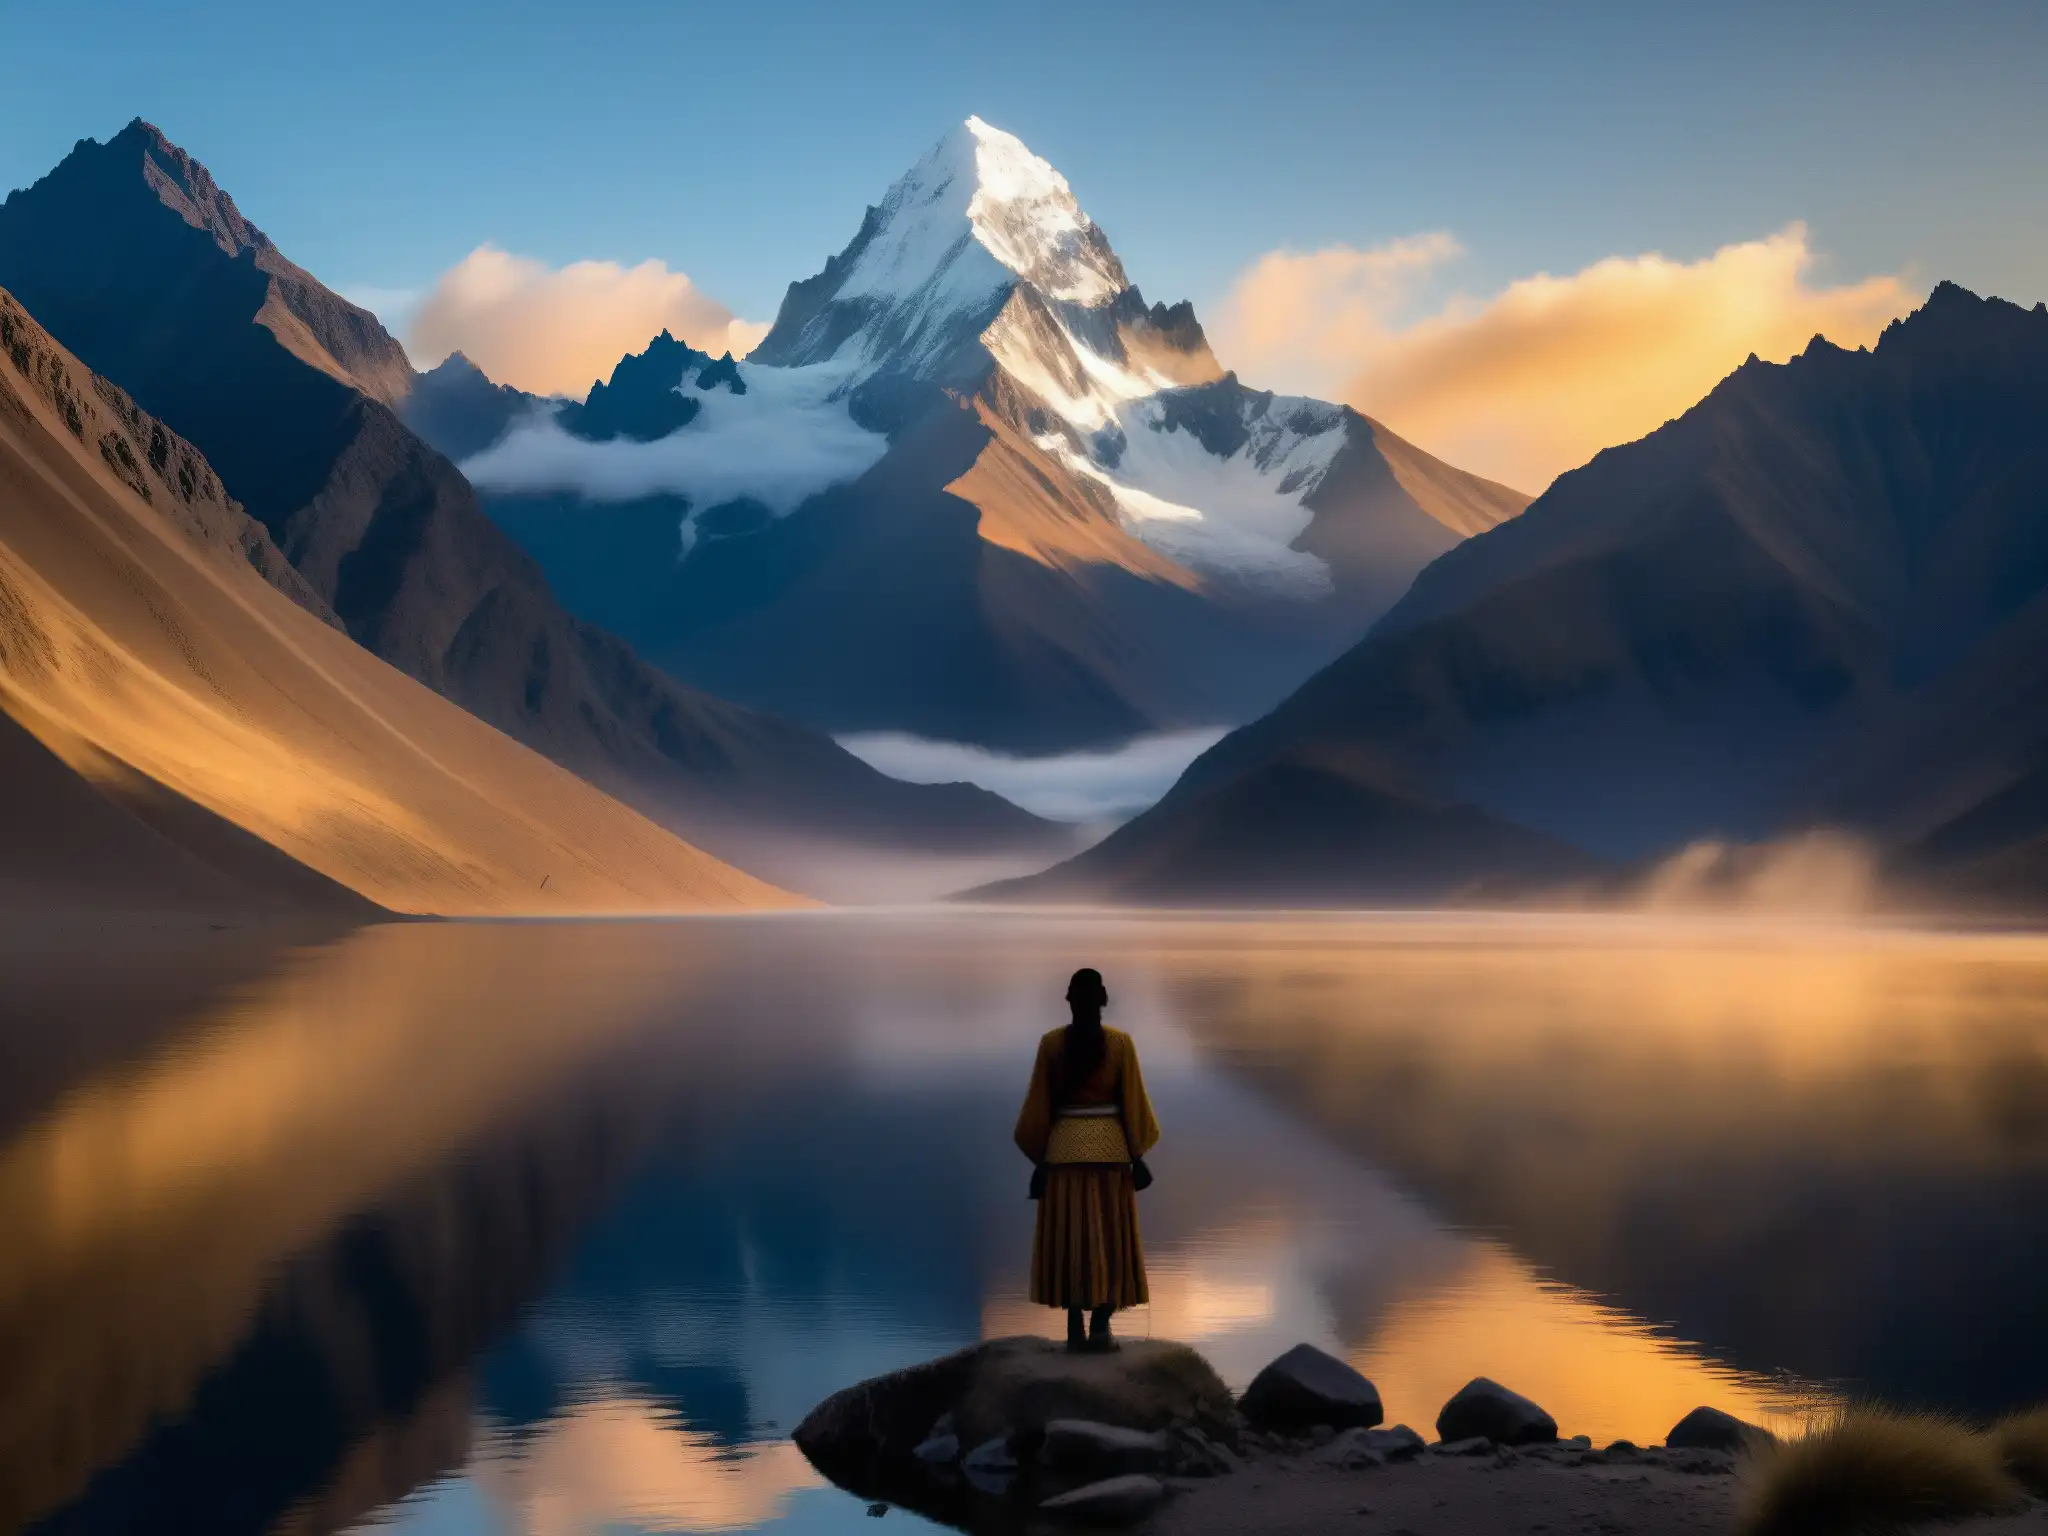 Misterio de la Llorona Andina: silueta de mujer en la neblina de un lago andino al amanecer, rodeada de montañas